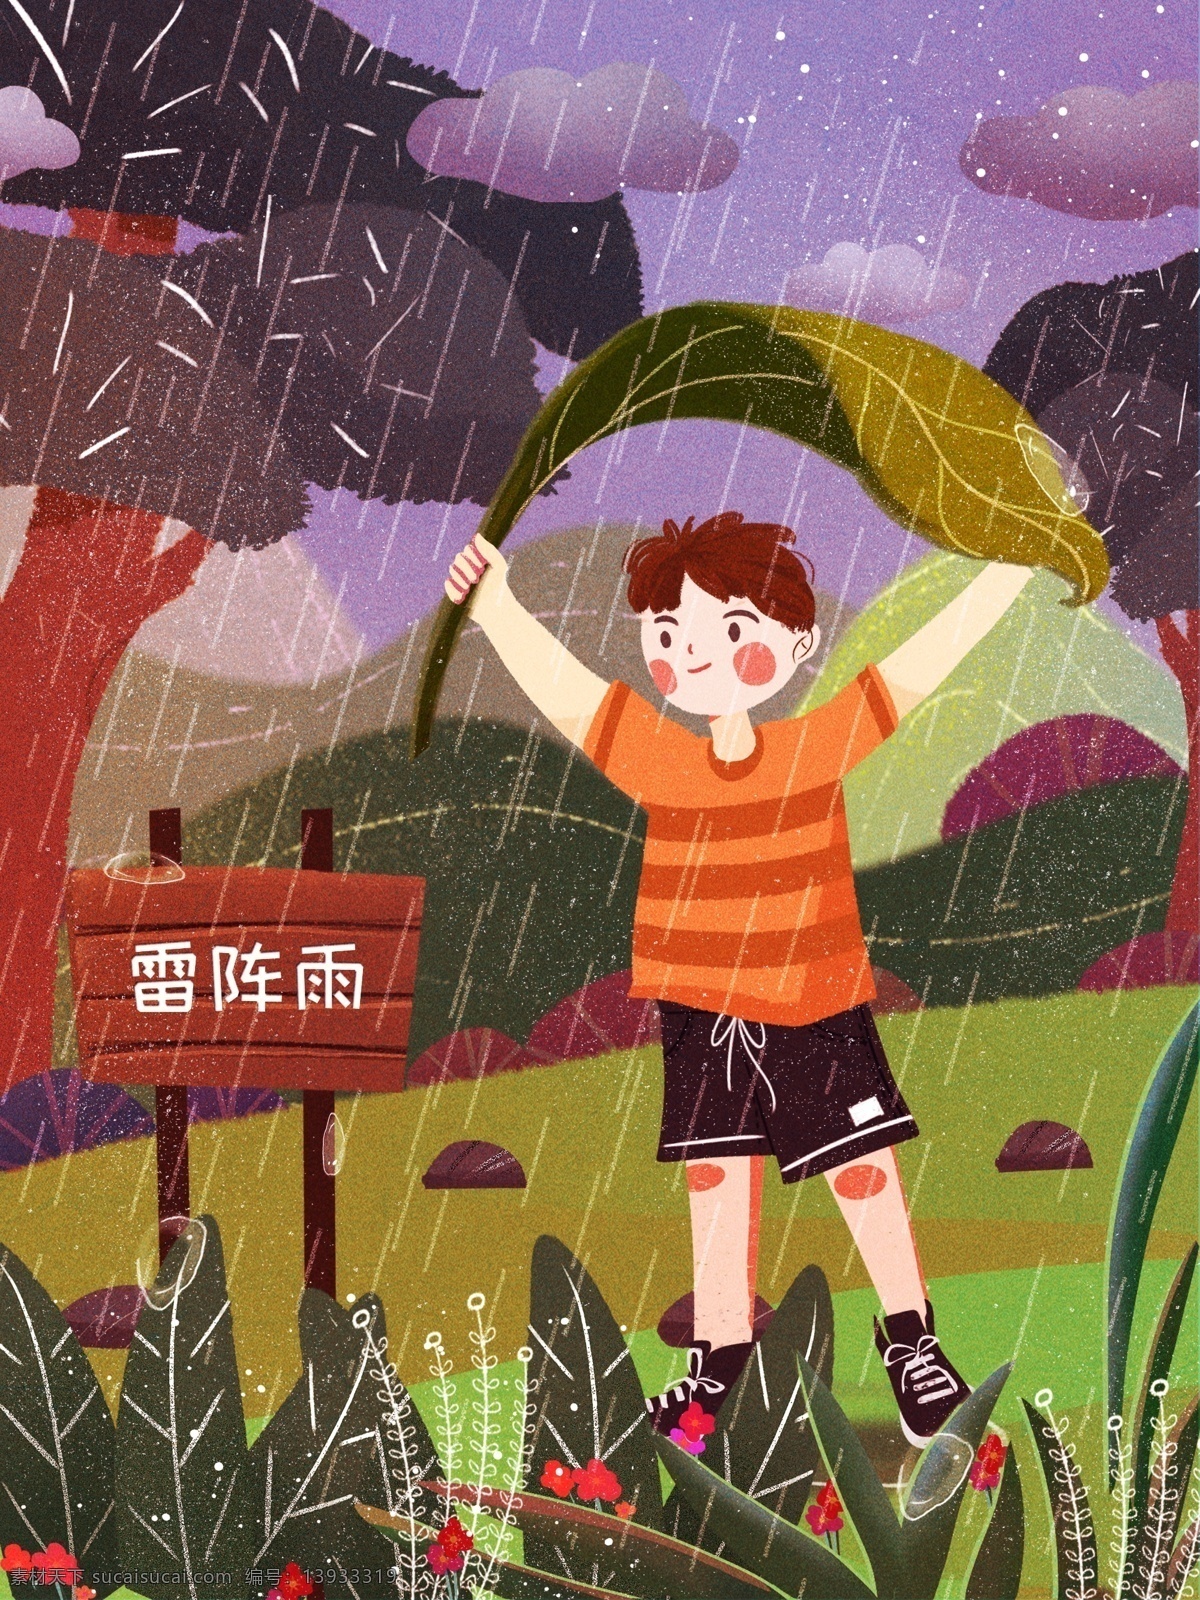 原创 插画 中国 气象 日 雷阵雨 人物 气象日 节日插画 下雨 卡通人物 节日 下雨插画